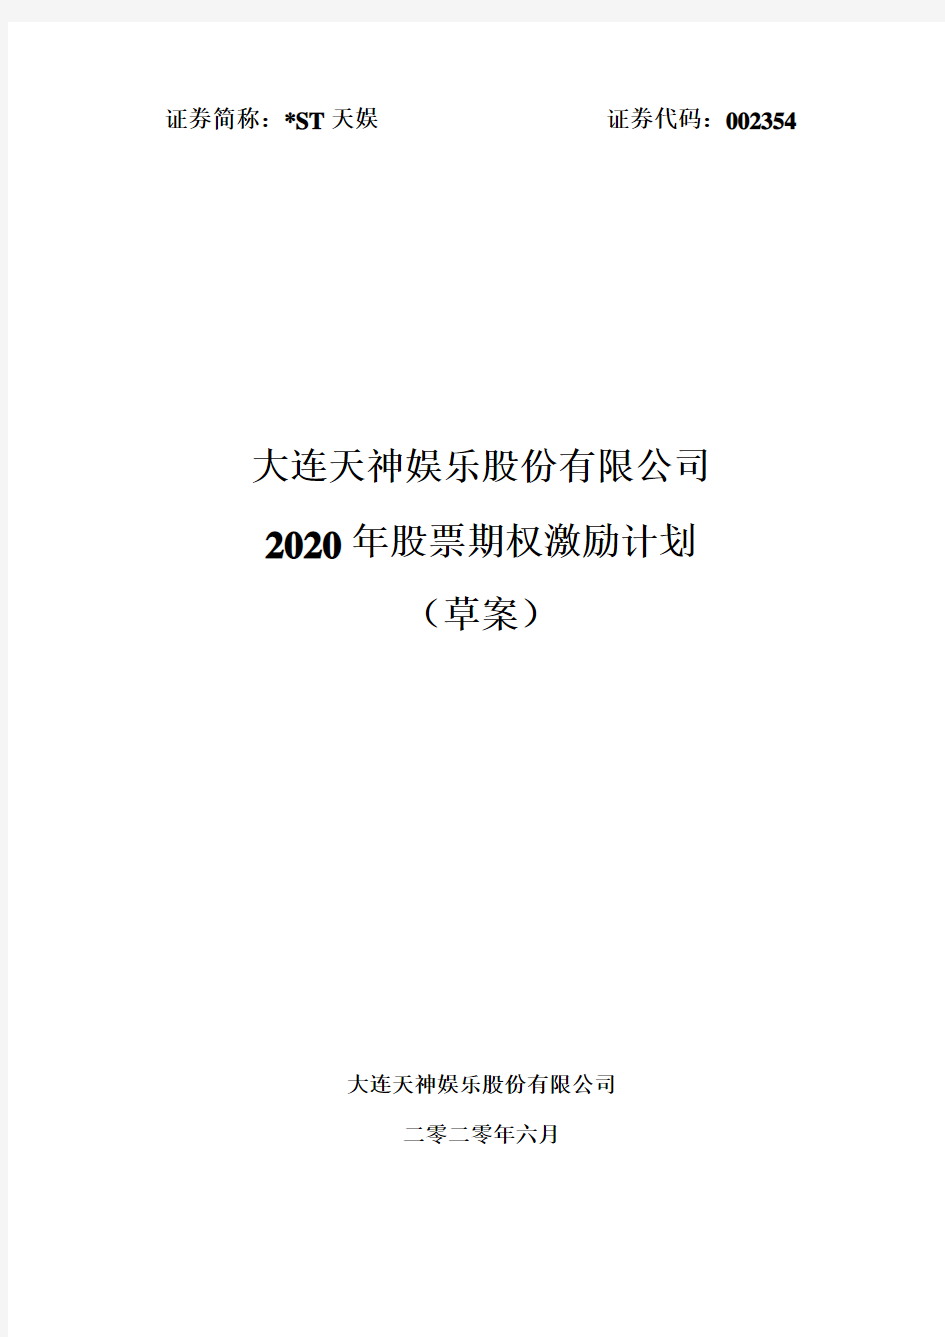 ST天娱：2020年股票期权激励计划(草案)